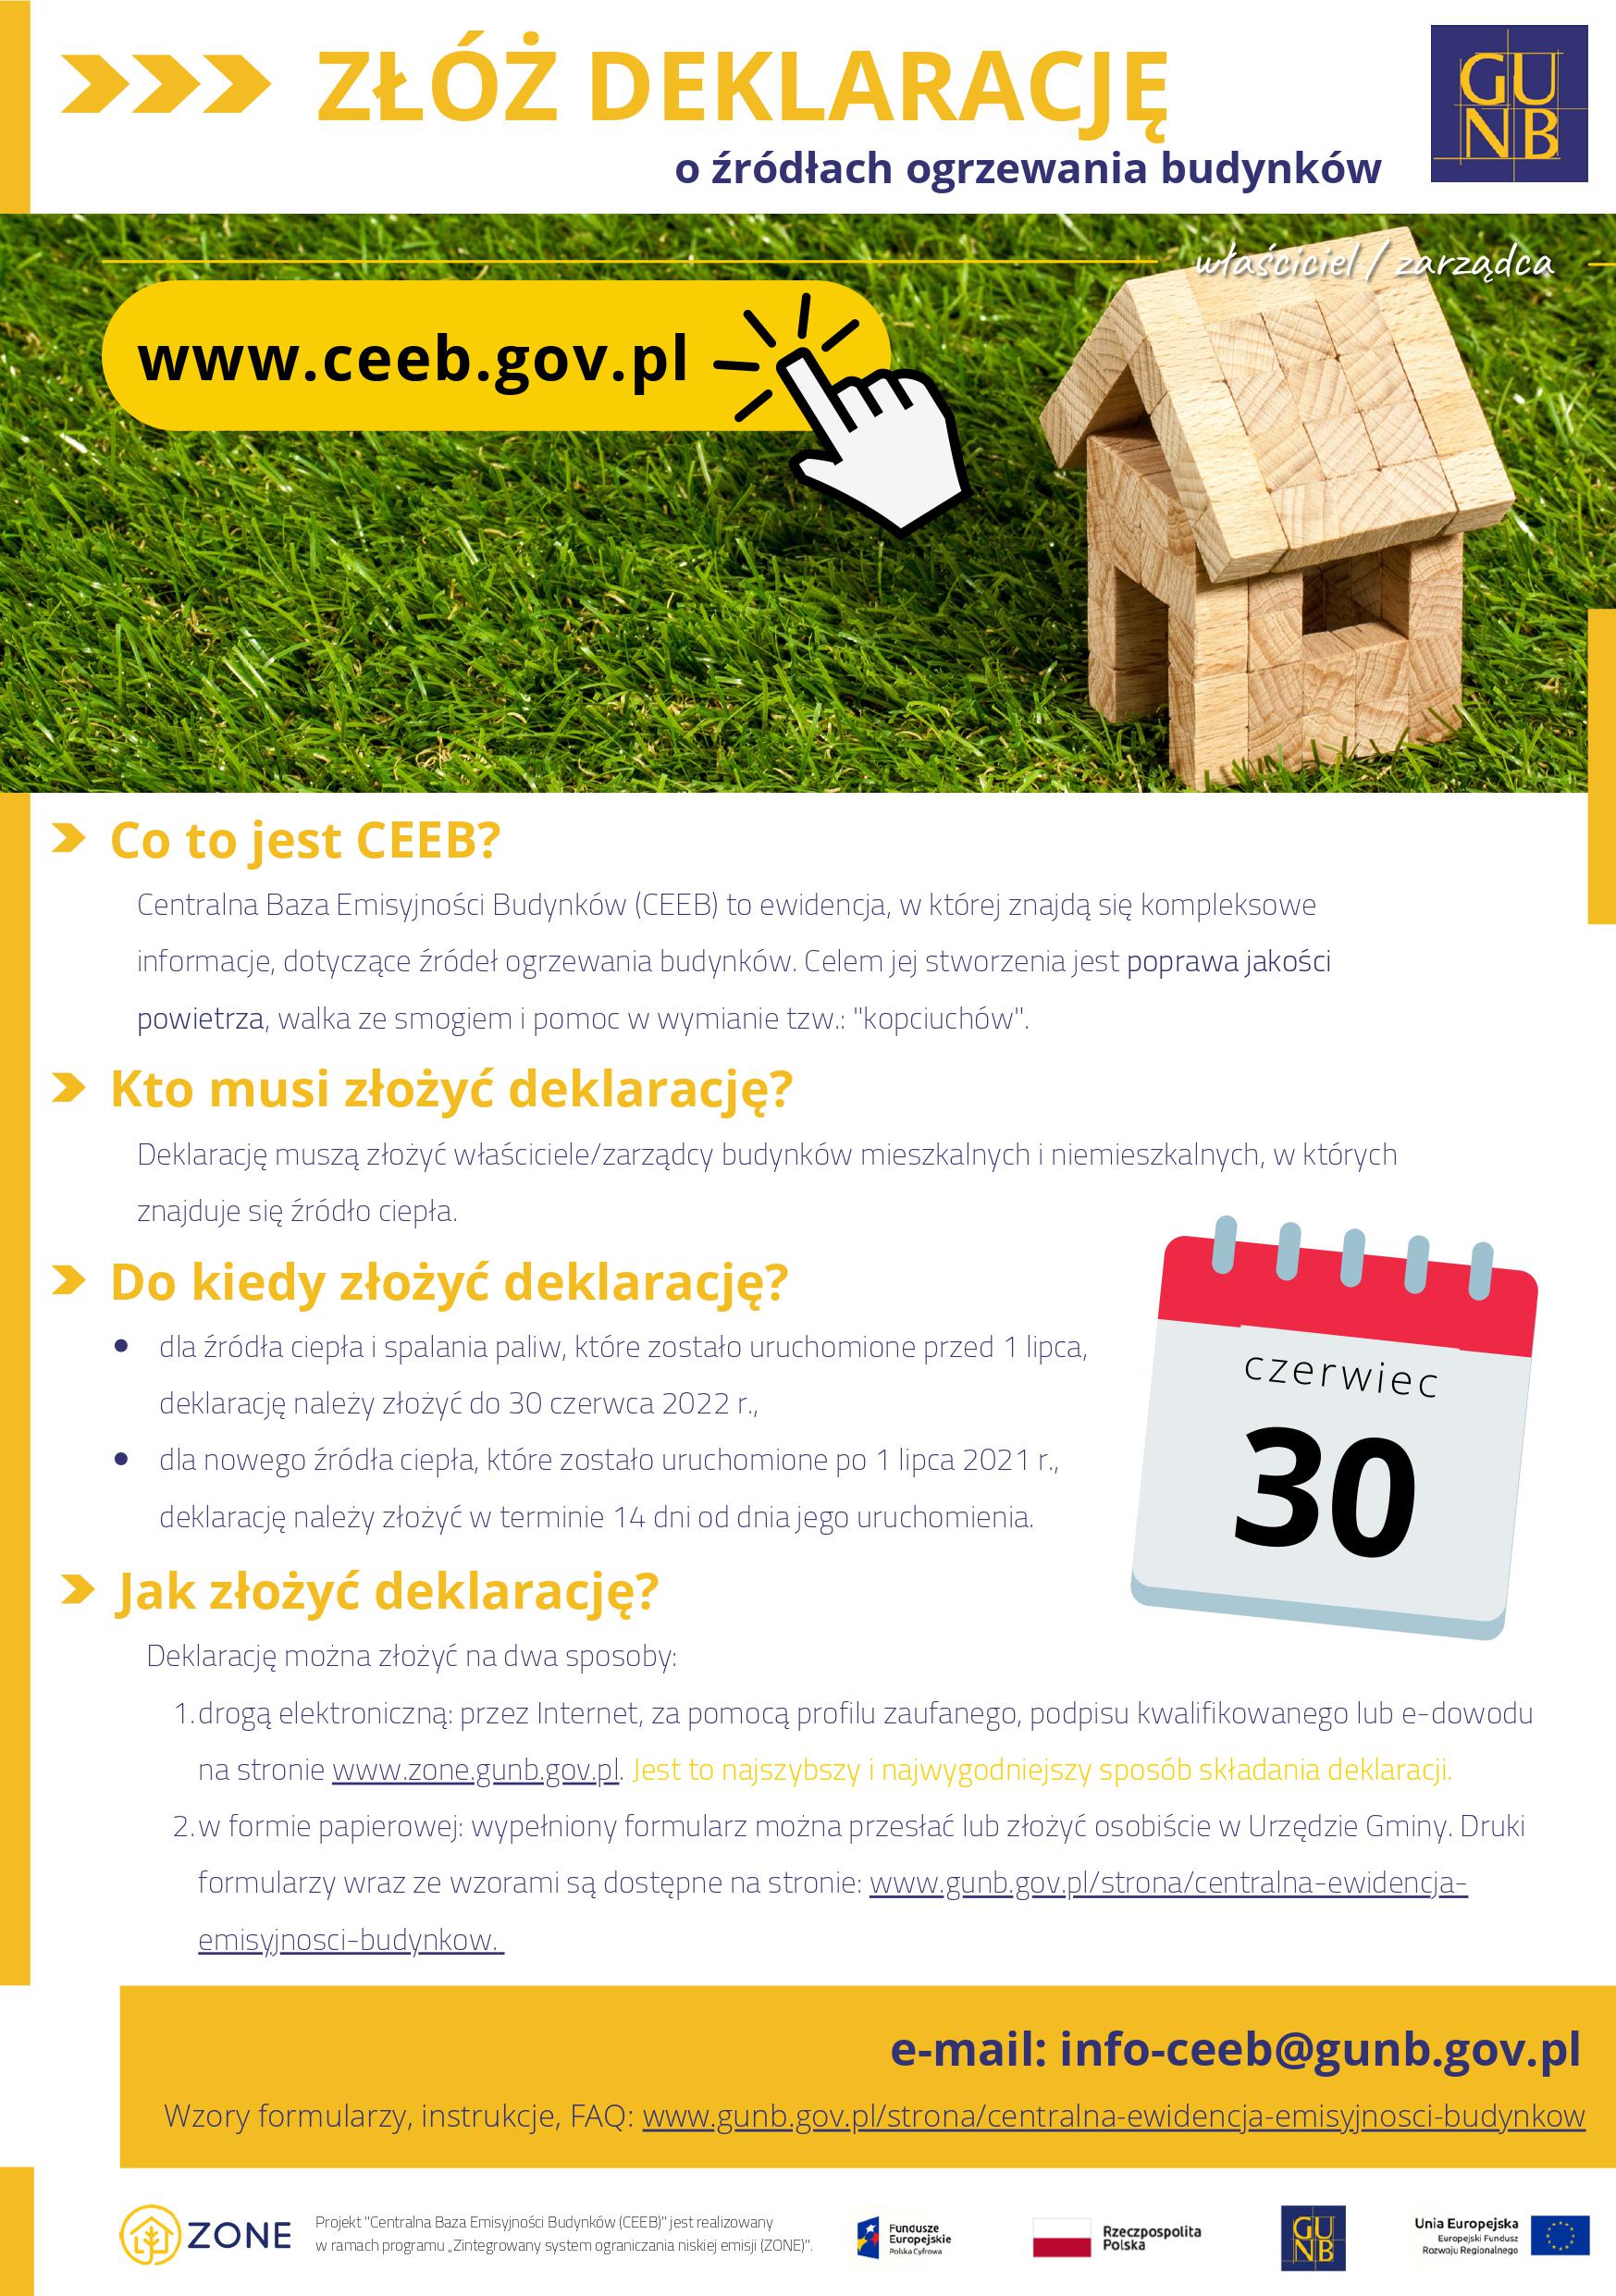 Przypominamy, że od 1 lipca 2021 r właściciele i zarządcy budynków mają obowiązek zgłoszenia źródła ogrzewania do Centralnej Ewidencji Emisyjności Budynków (CEEB)*. Deklaracje, można składać online, bezpośrednio w CEEB lub w wersji papierowej, za pośrednictwem urzędu gminy;